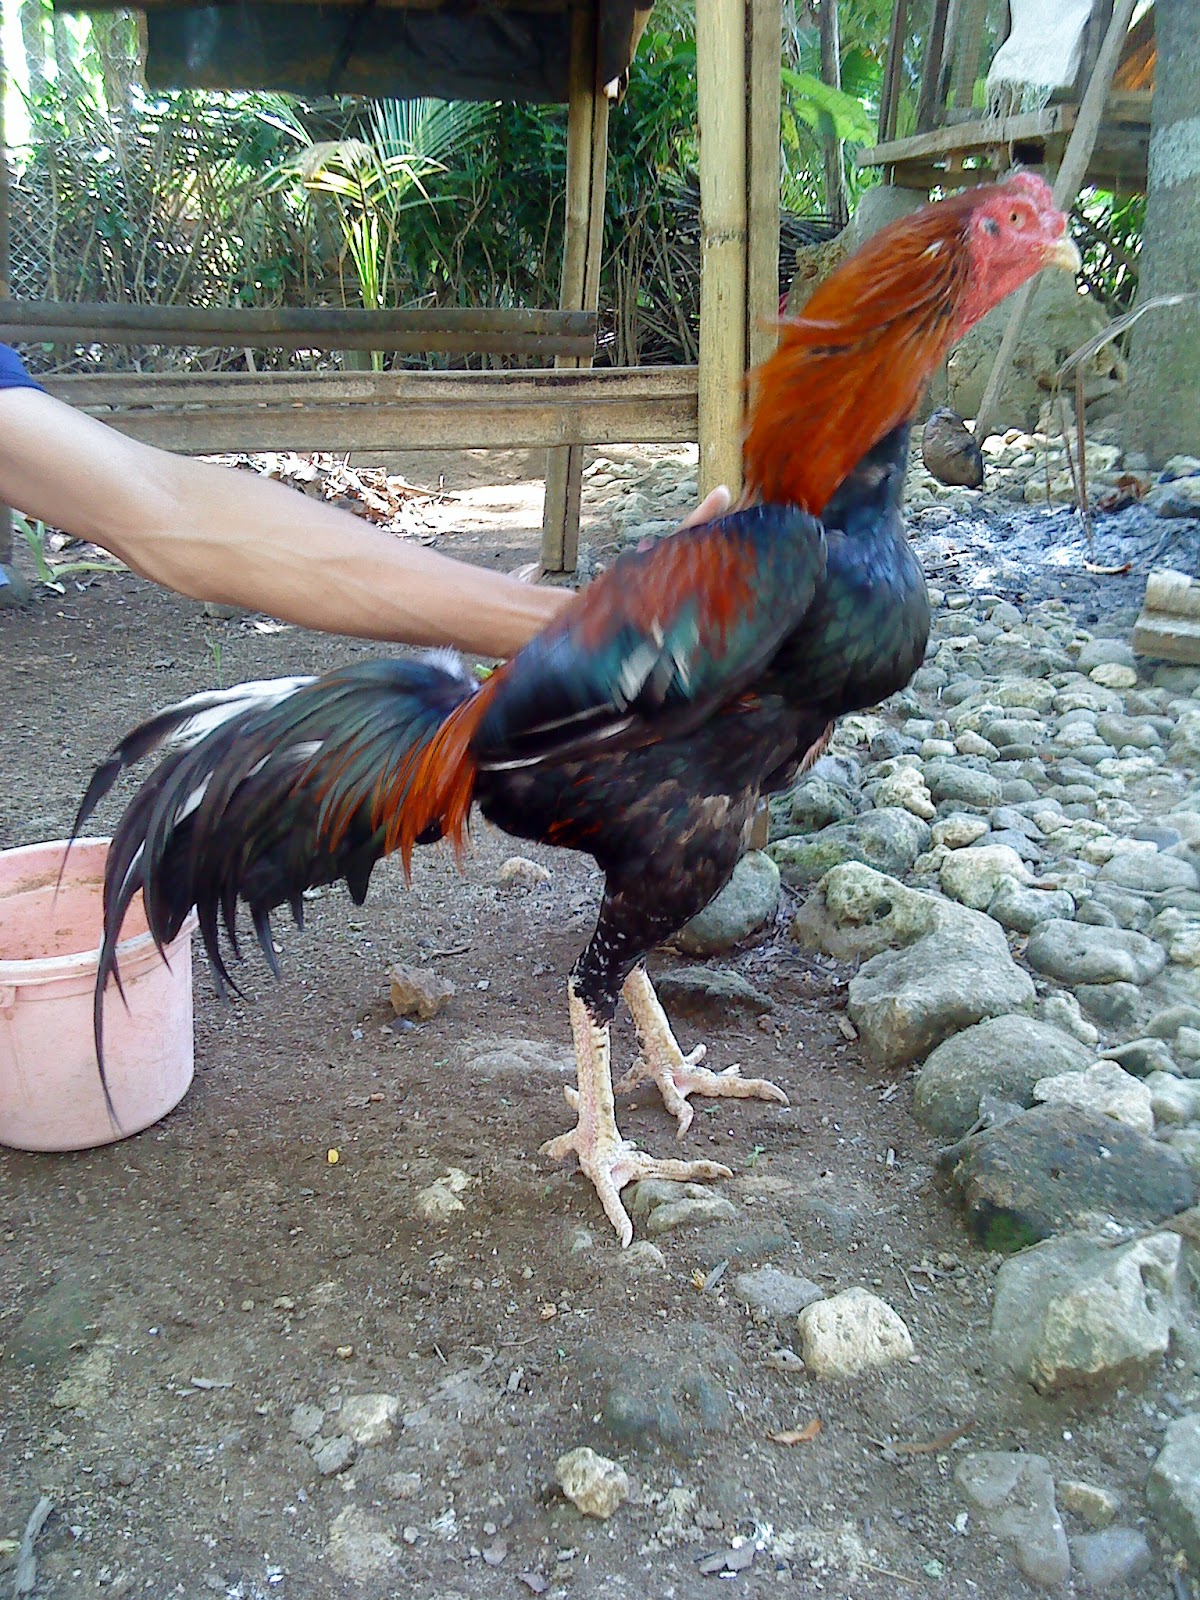 Saya Mulai Beternak Ayam Bangkok Diawali Dari Hobi